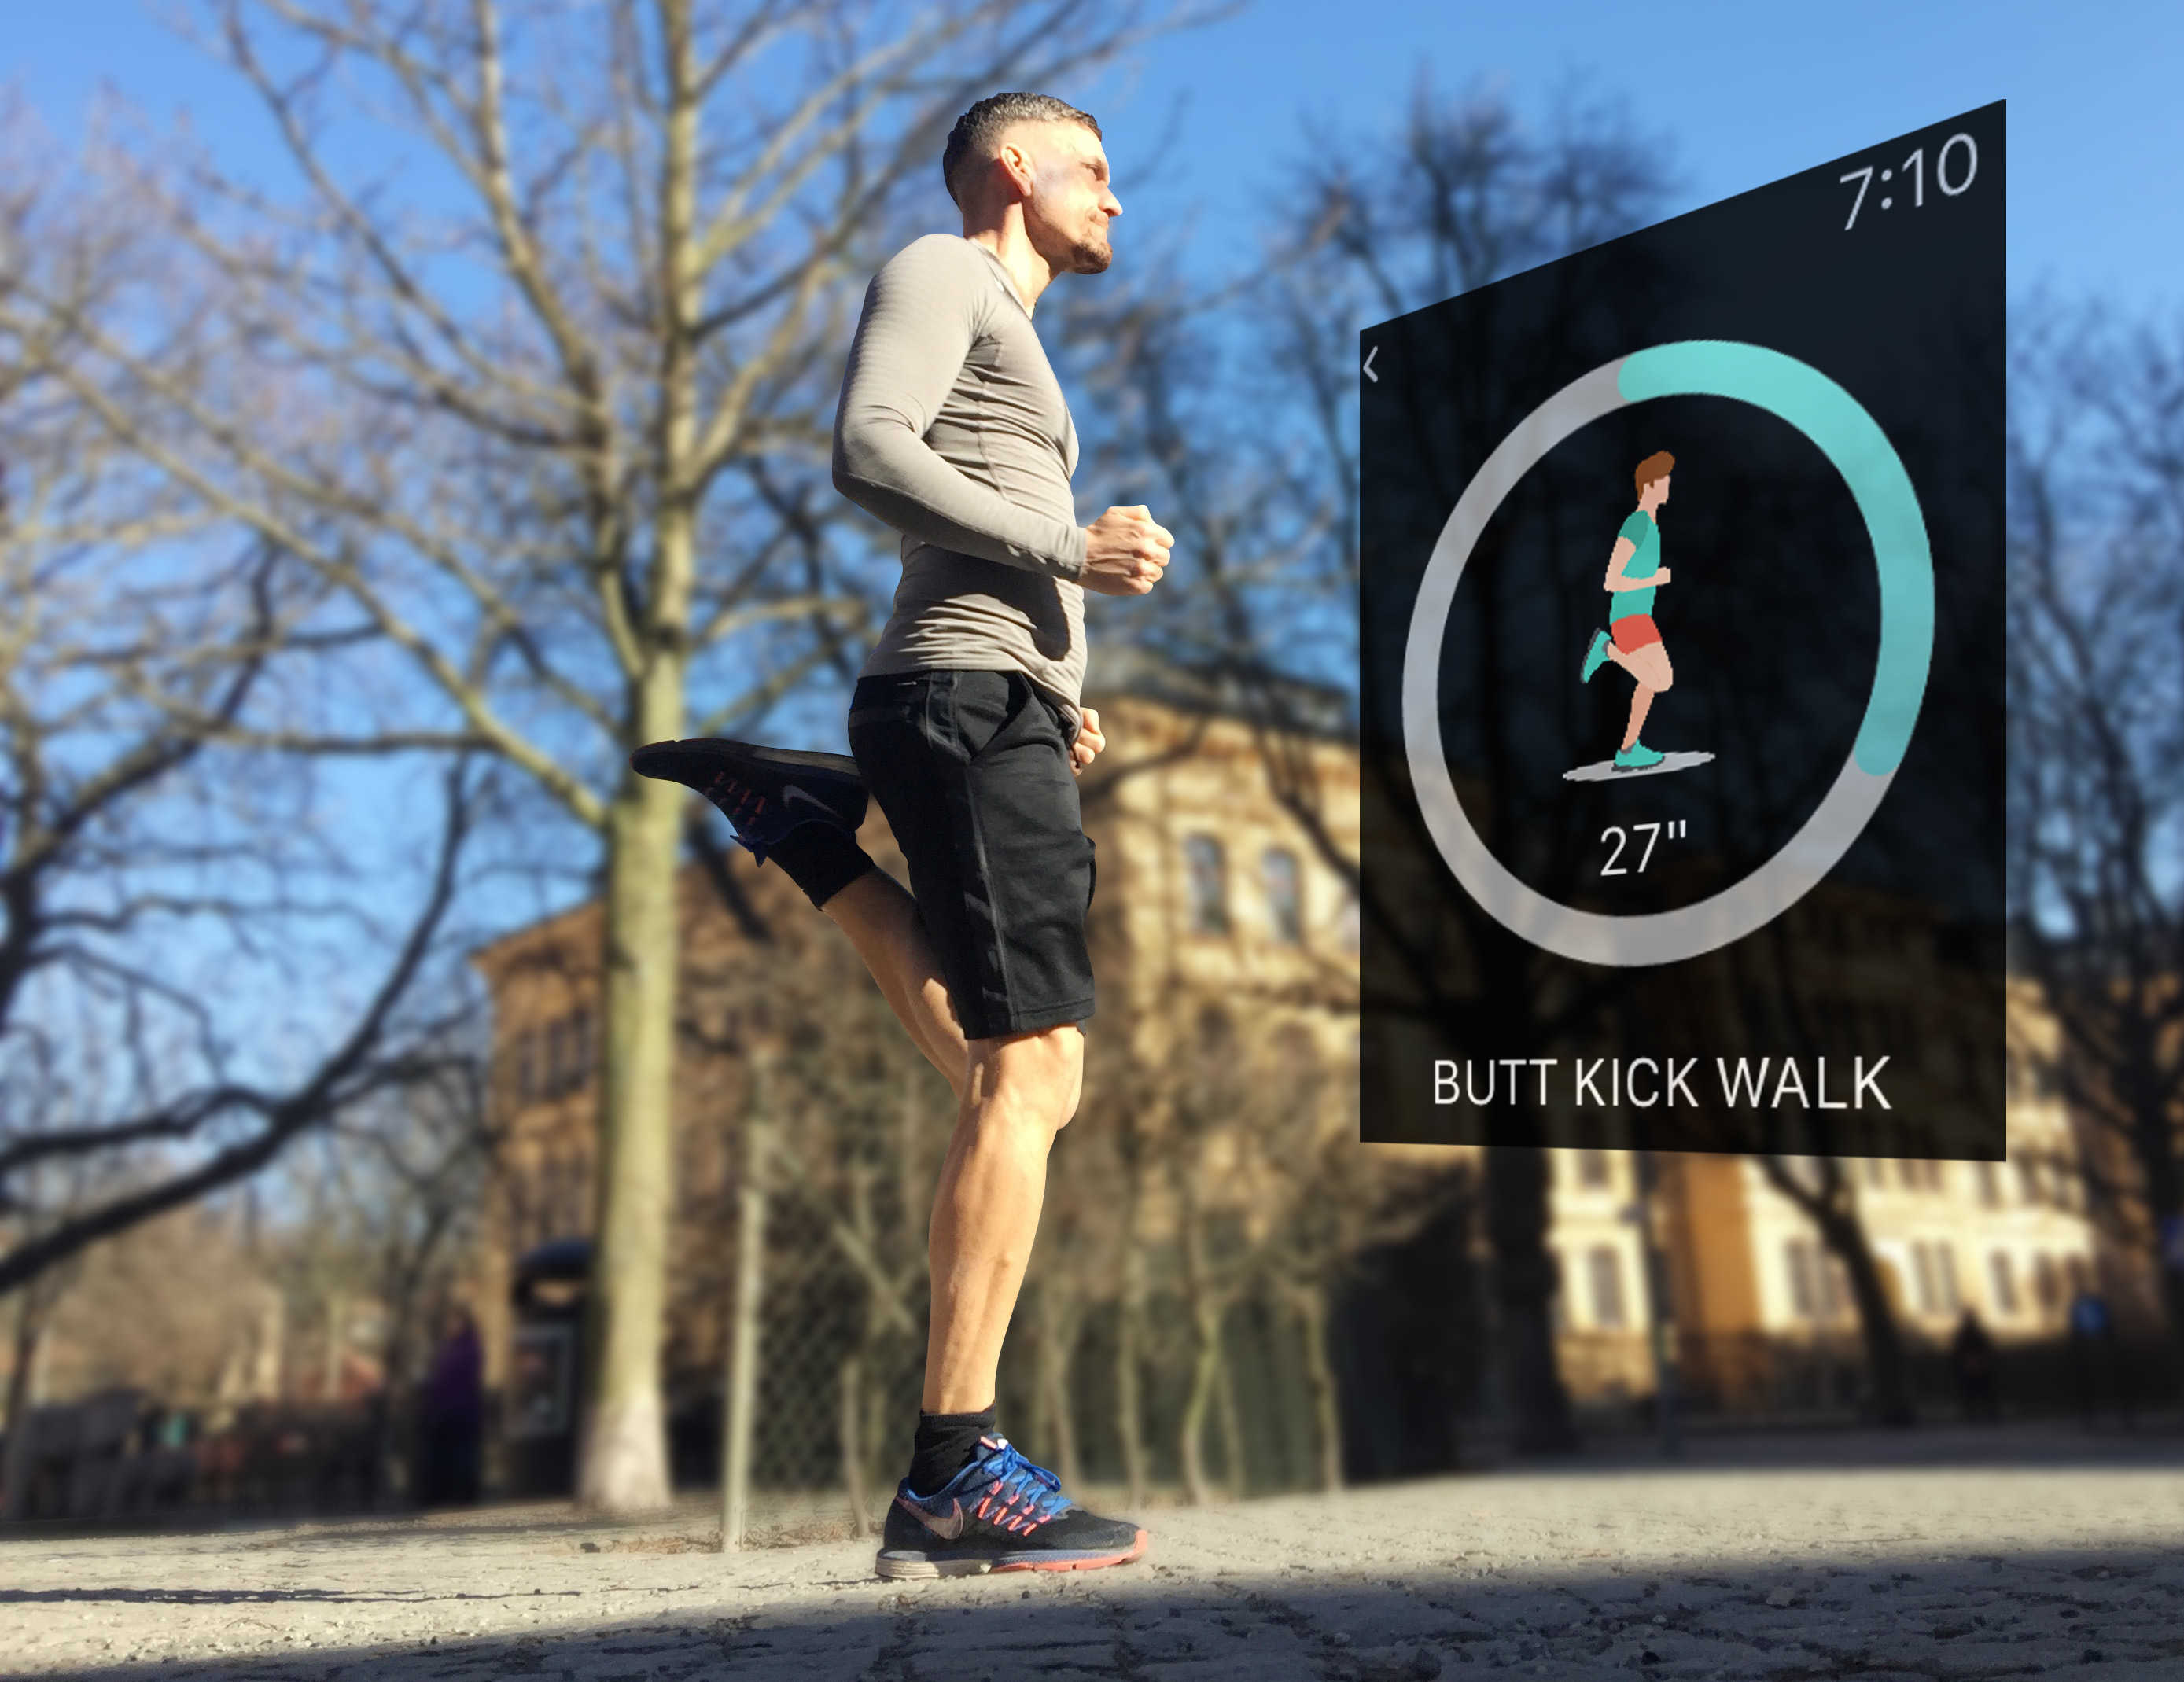 Kicking butt – Watch app RunnerStretch recommends a butt kick walk as part of your warmup